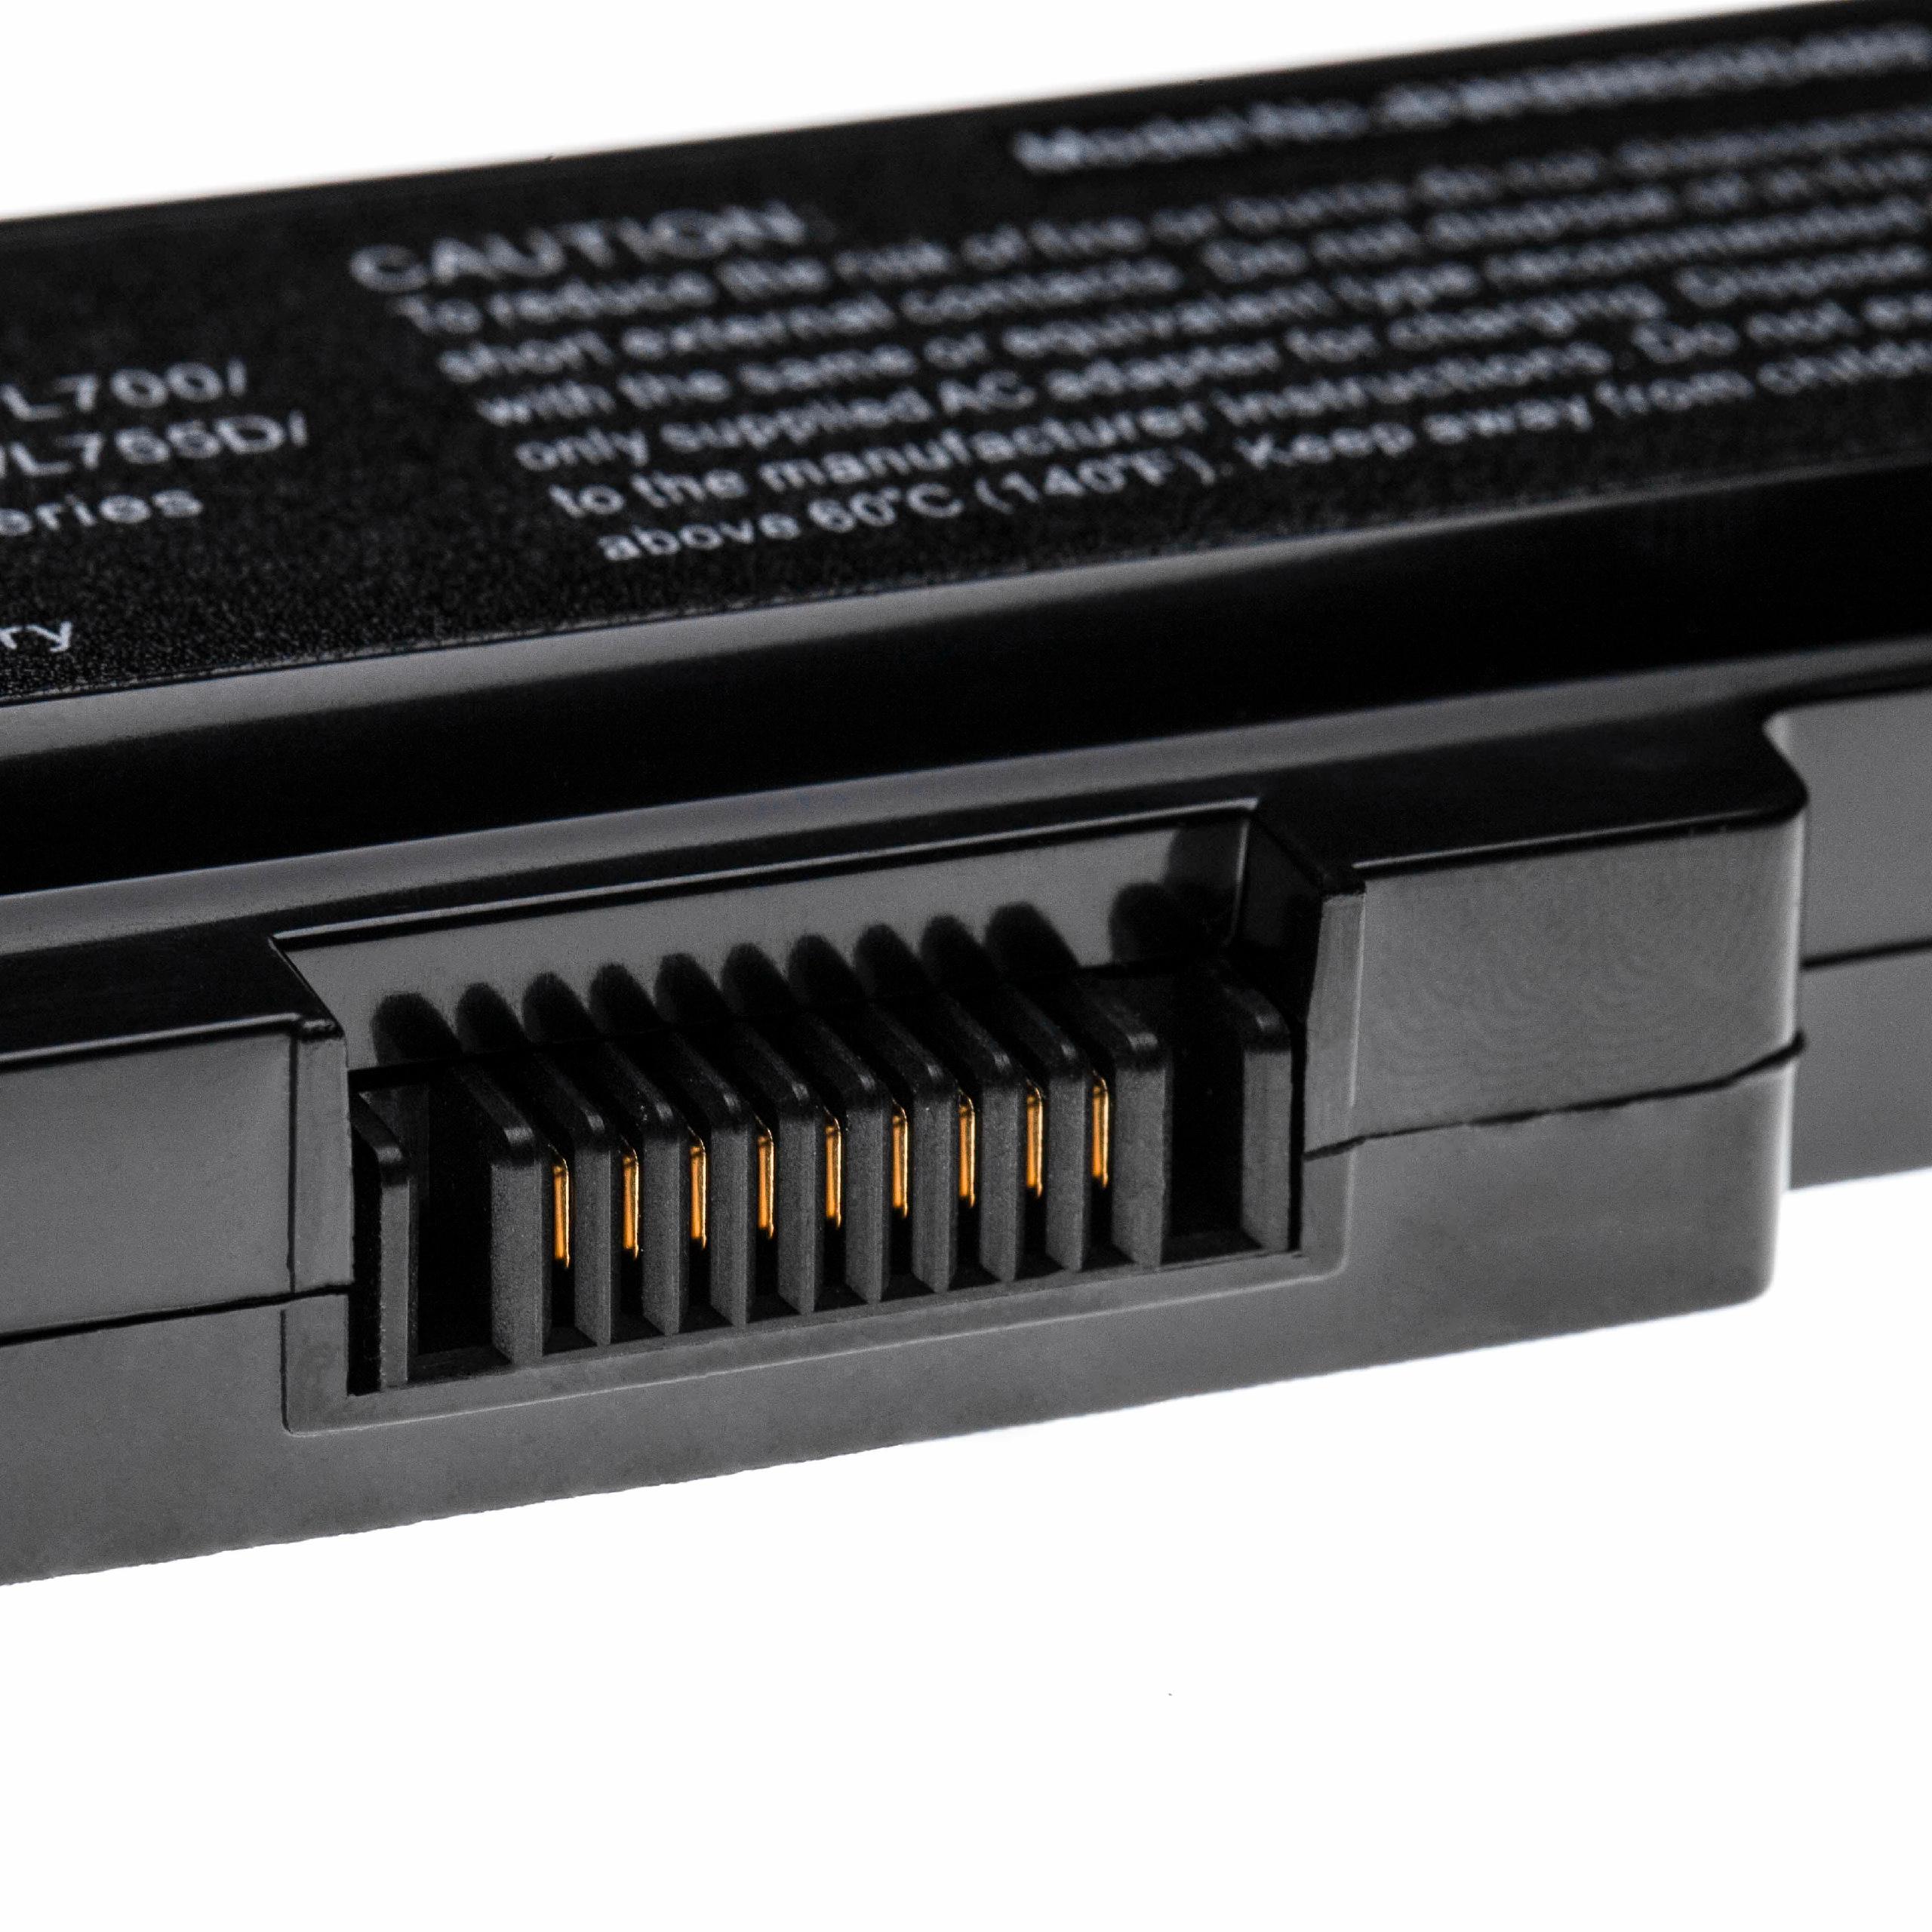 Akumulator do laptopa zamiennik Toshiba PA3817U-1BRS, PA3817U-1BAS - 5200 mAh 10,8 V LiPo, czarny